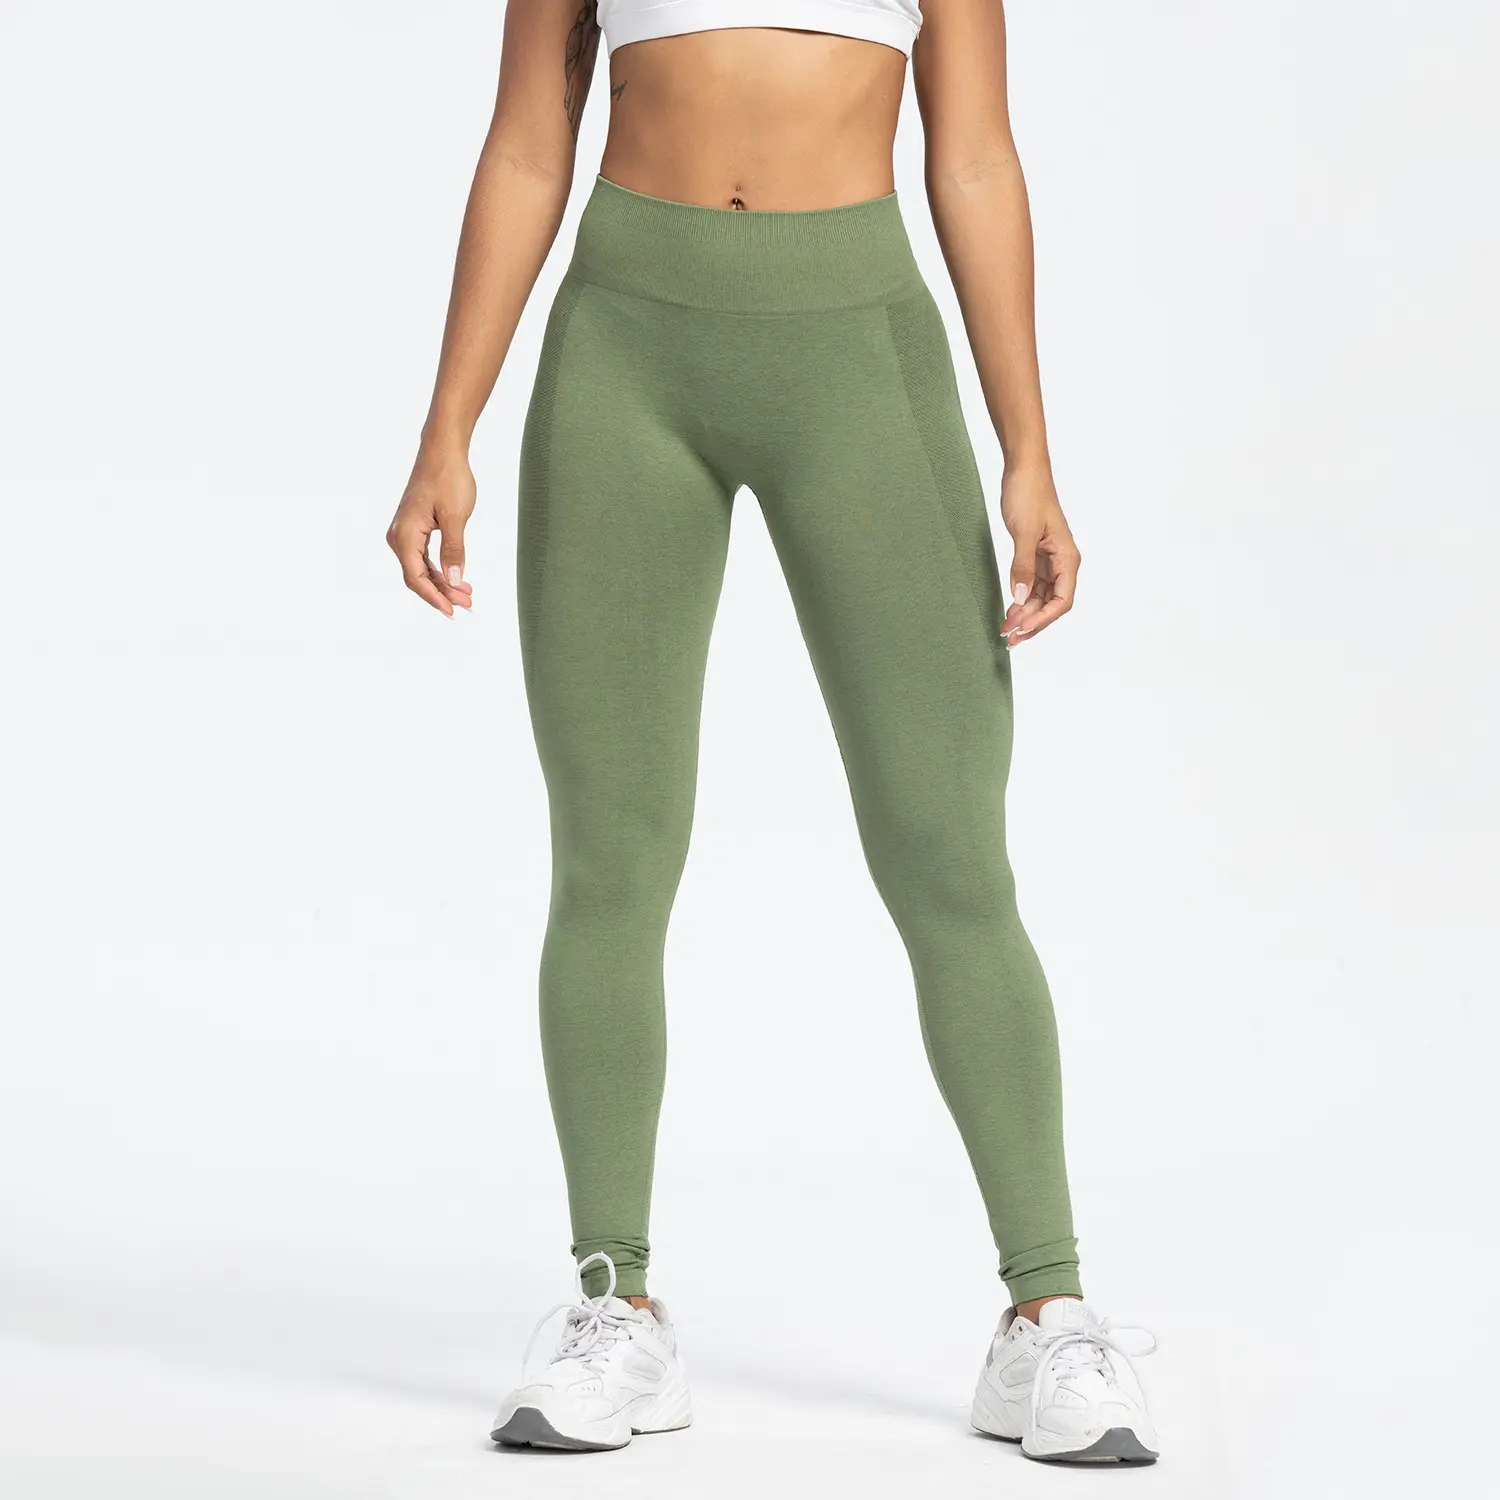 Novas Leggings Correndo Workout Fitness Yoga Calças Seamless Hip Lift Calças de Cintura Alta Elástico Apertado Mulheres Yoga Leggings